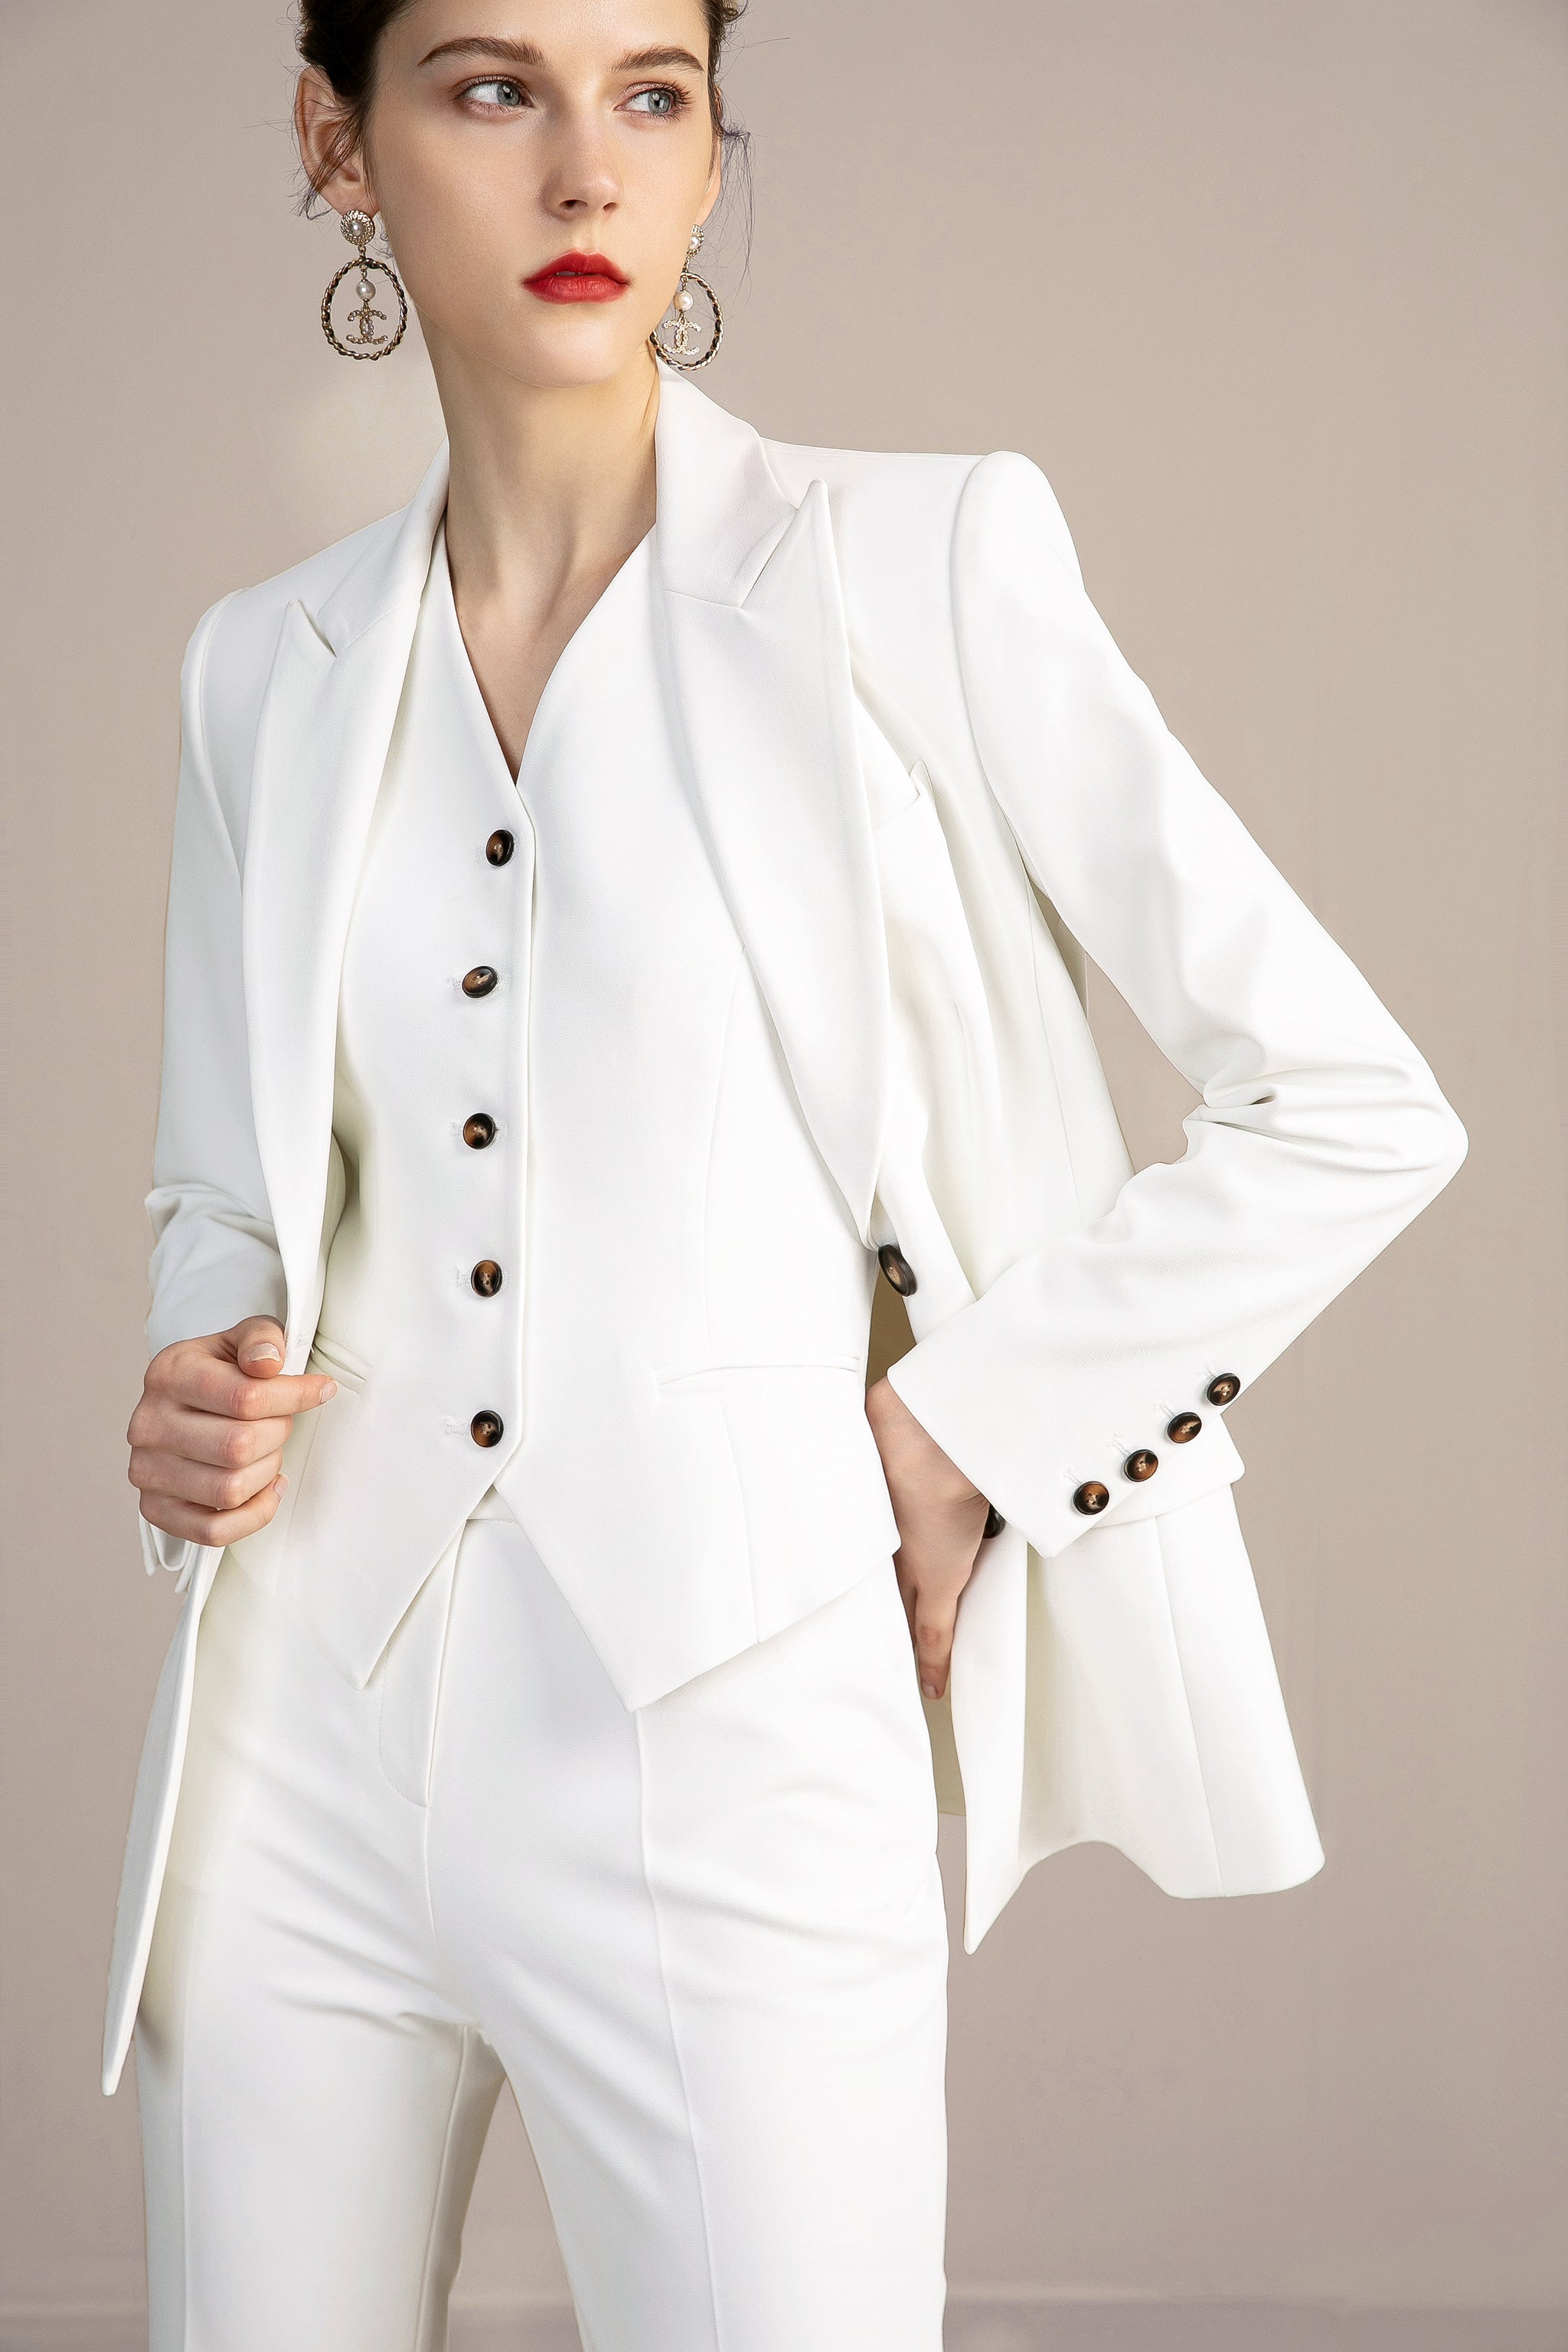 Women's Three Piece Pant Suit | White Pant Suits Online | FashionByTeresa